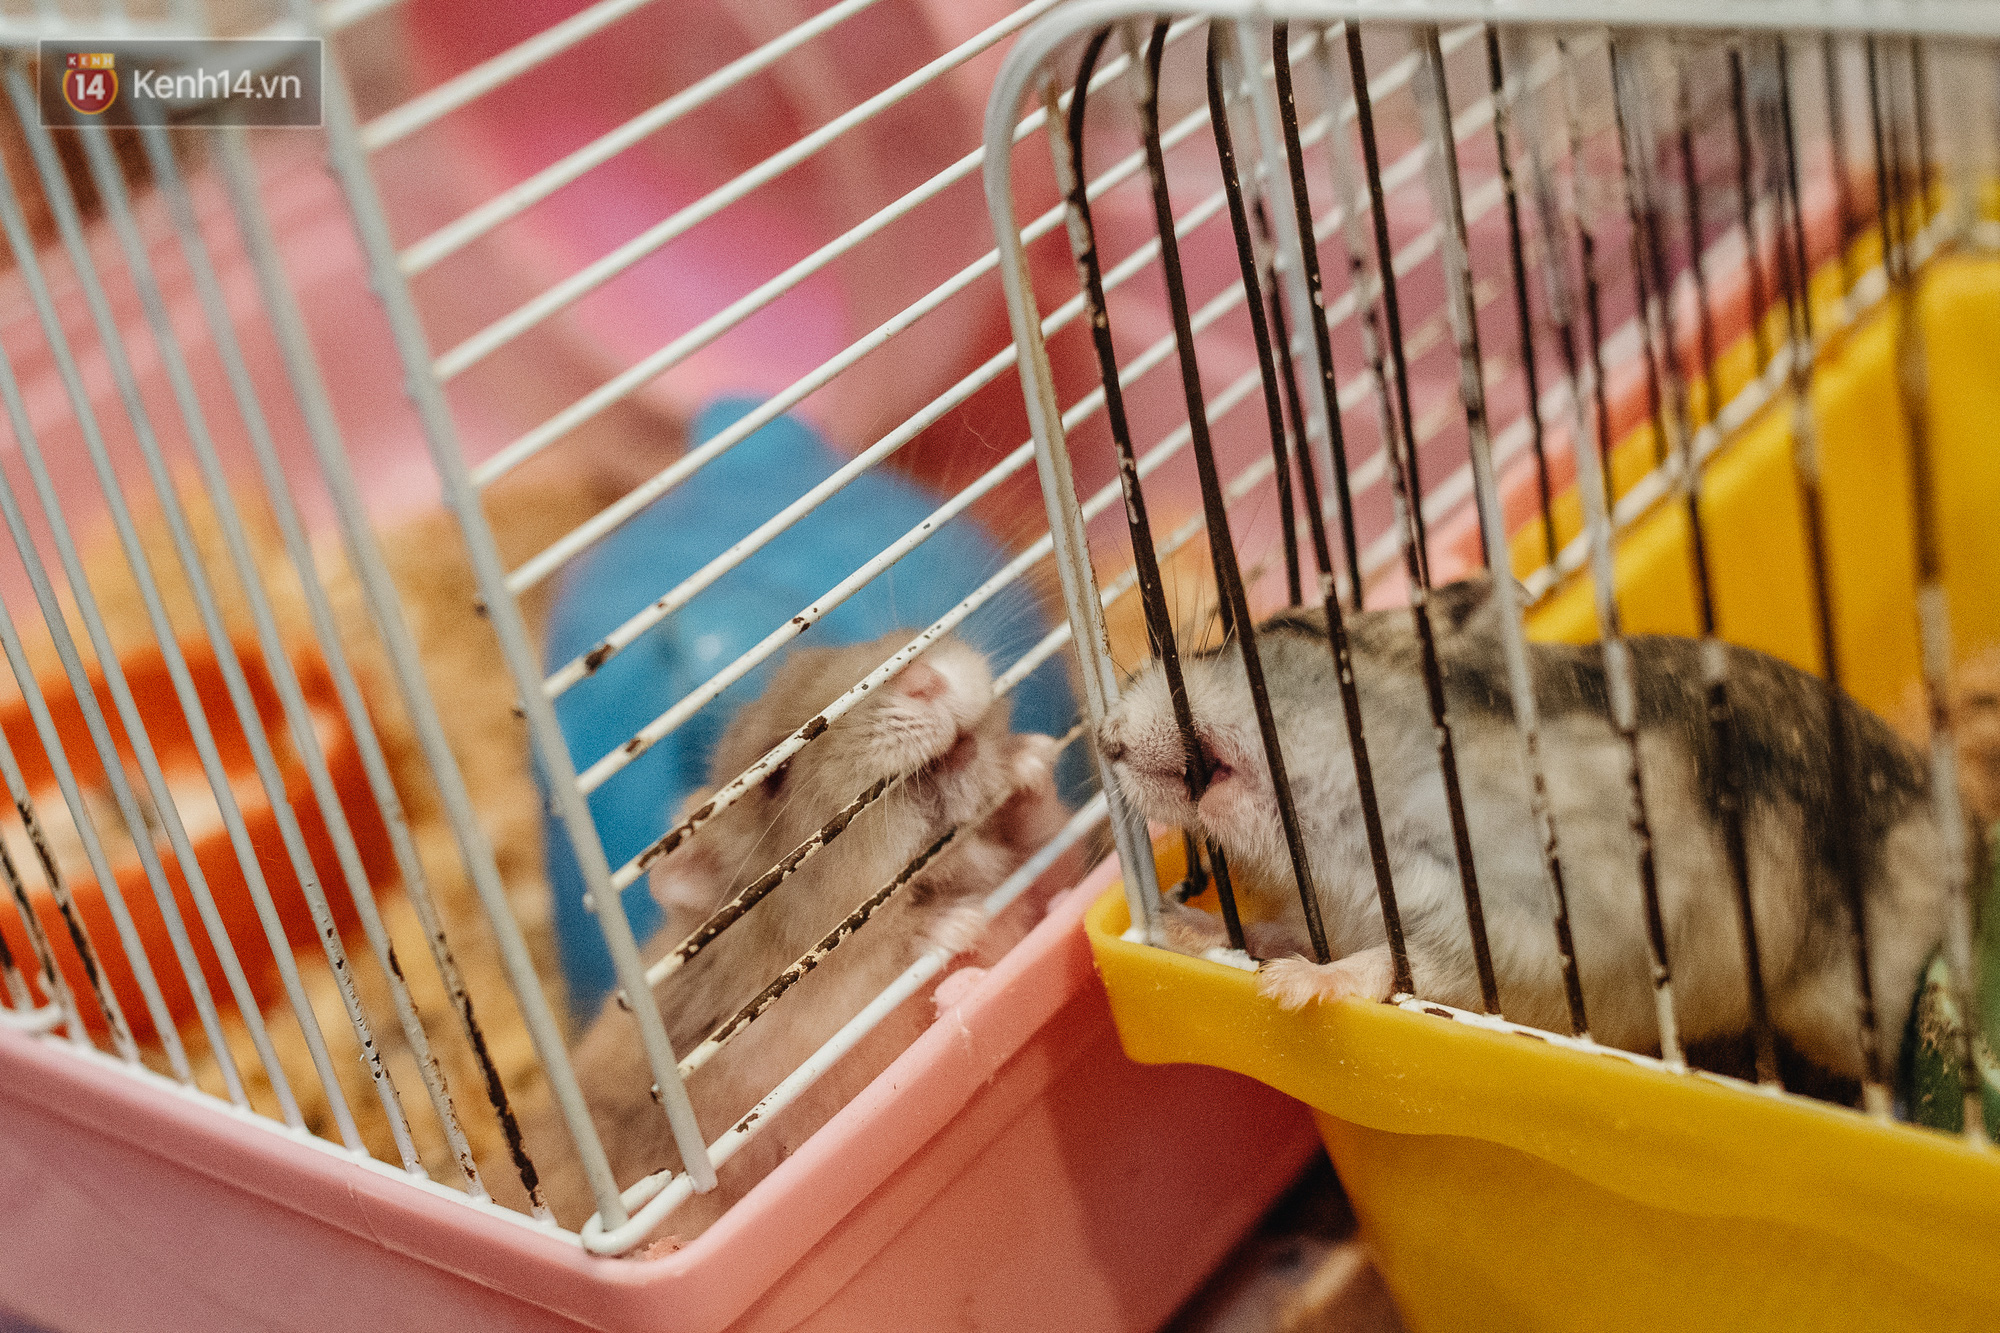 Năm Canh Tý, người trẻ tìm mua chuột hamster để giảm stress và cầu chúc may mắn - Ảnh 5.